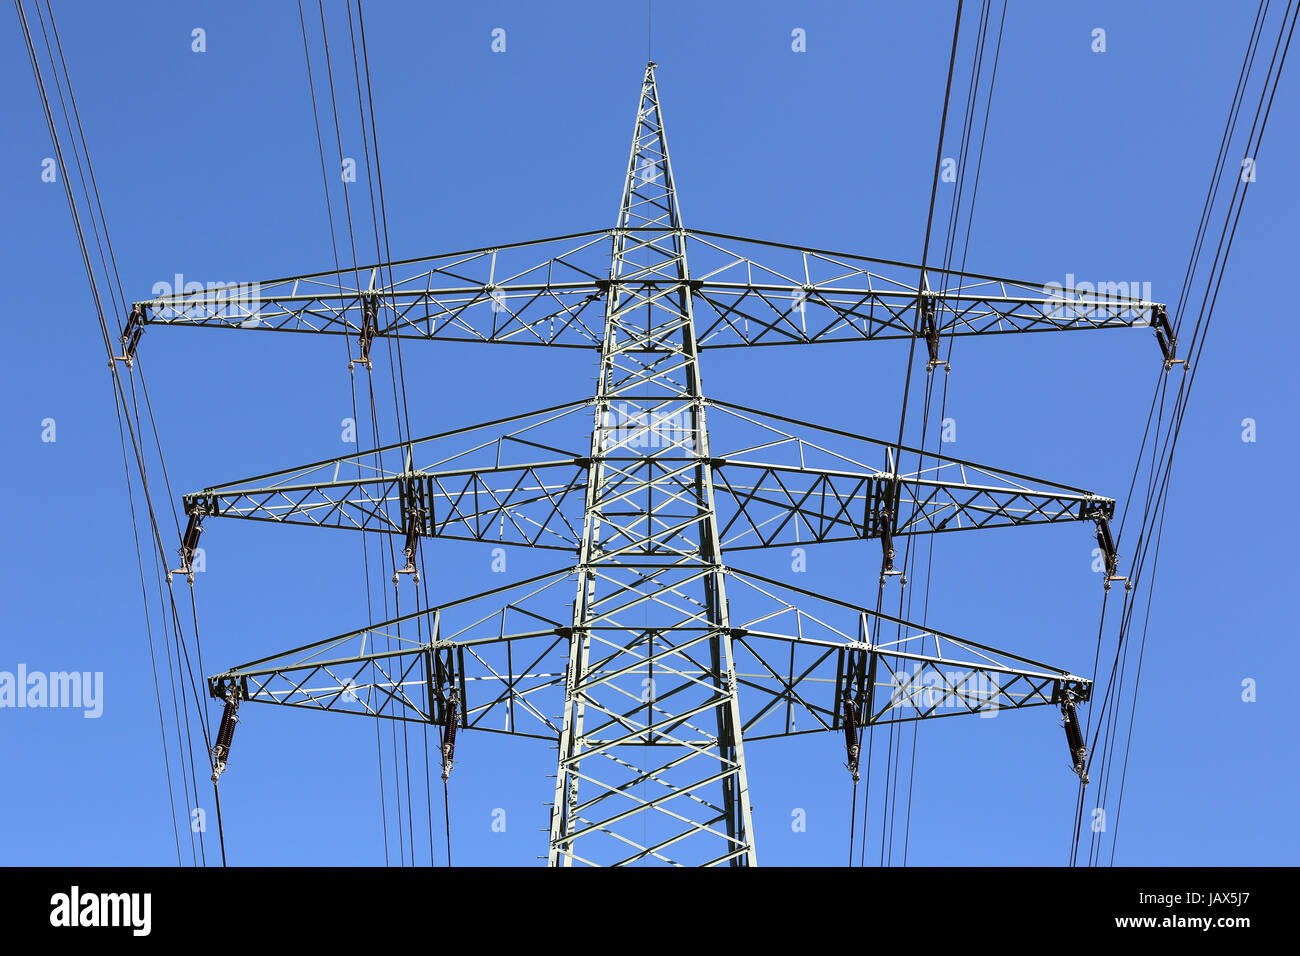 Ein Strommast vor einem blauen Himmel Thema Energie Stock Photo